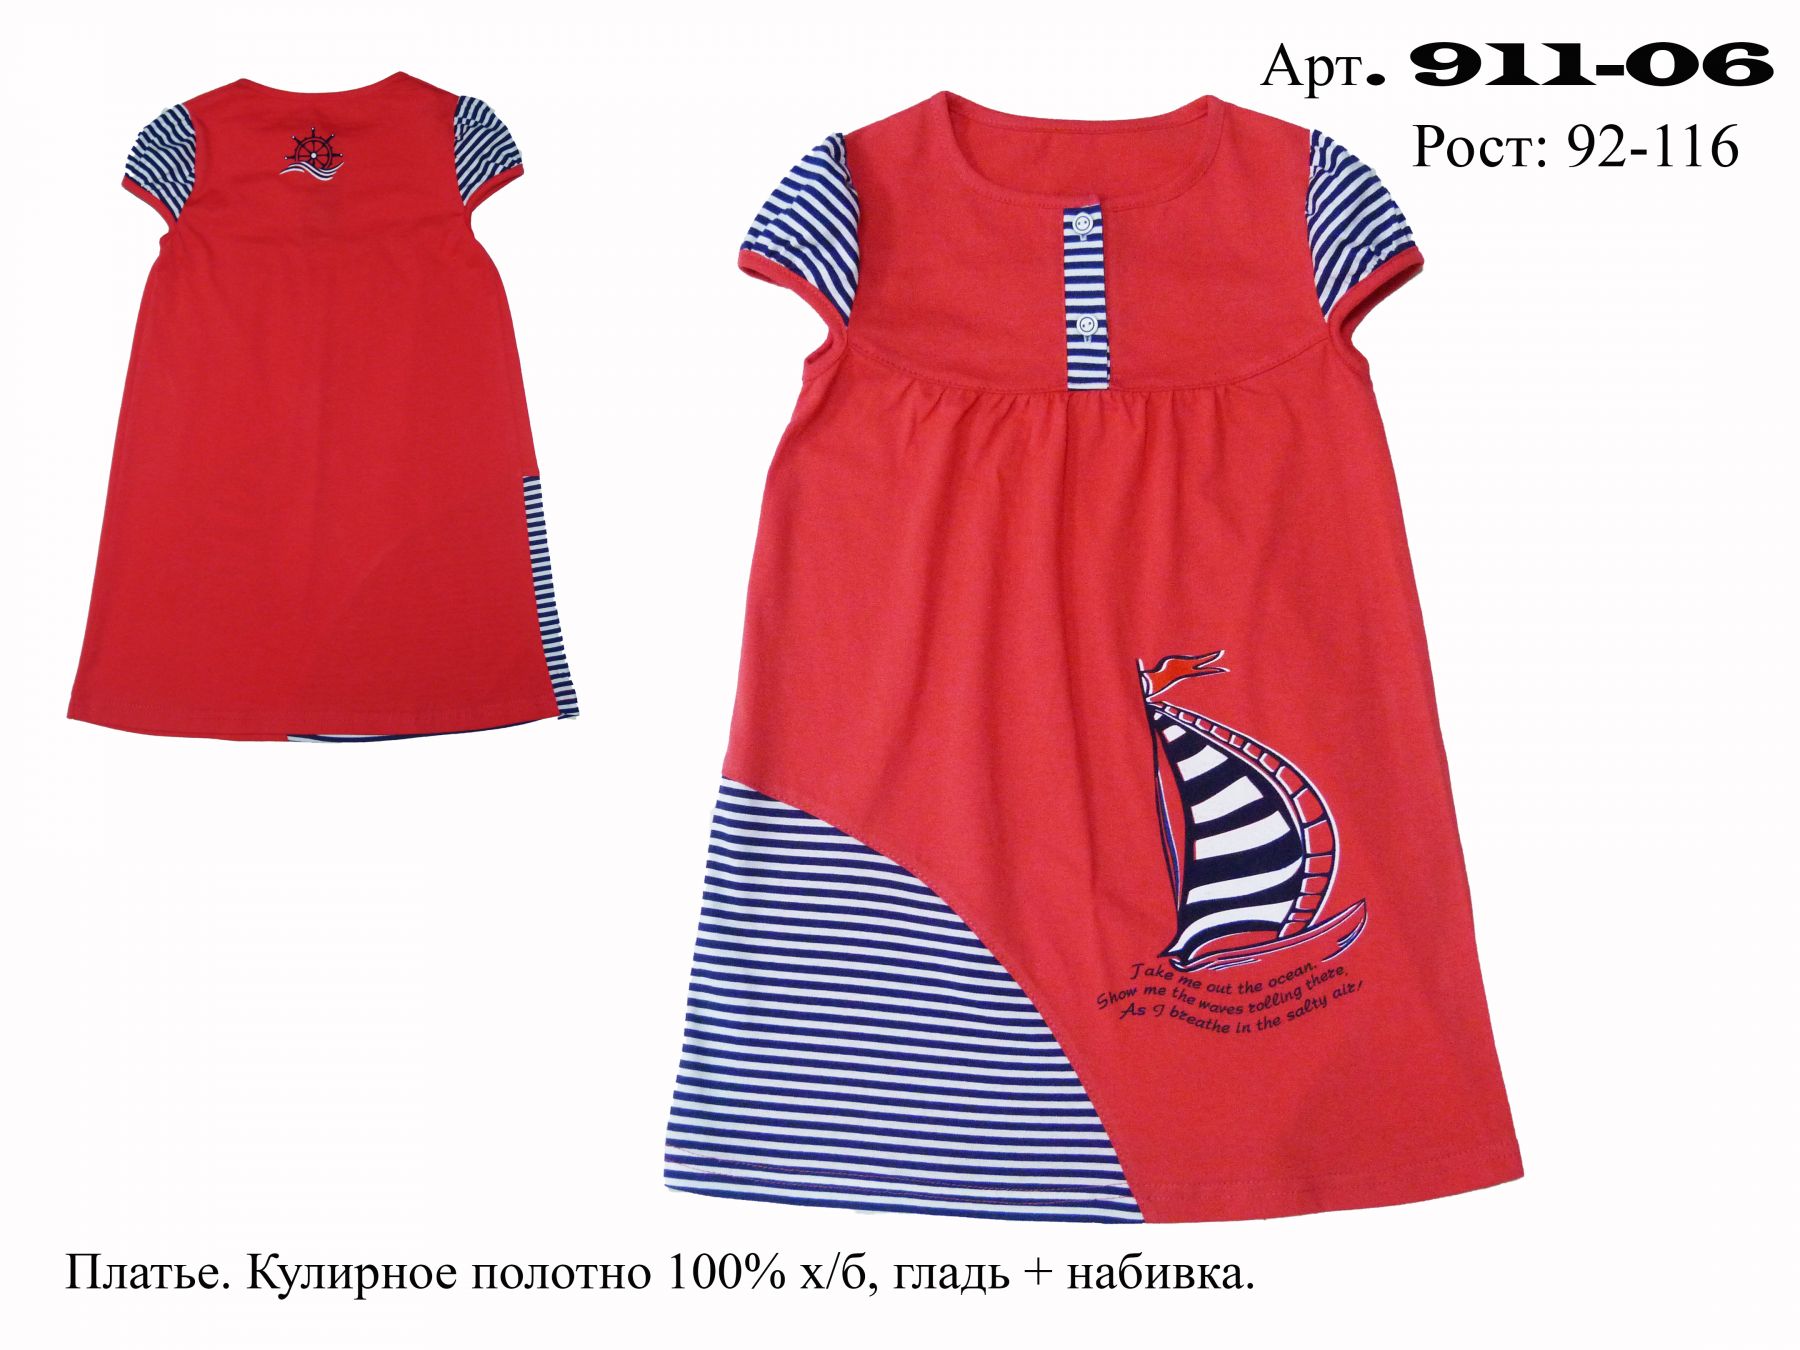 модная детская одежда 911-06 платье